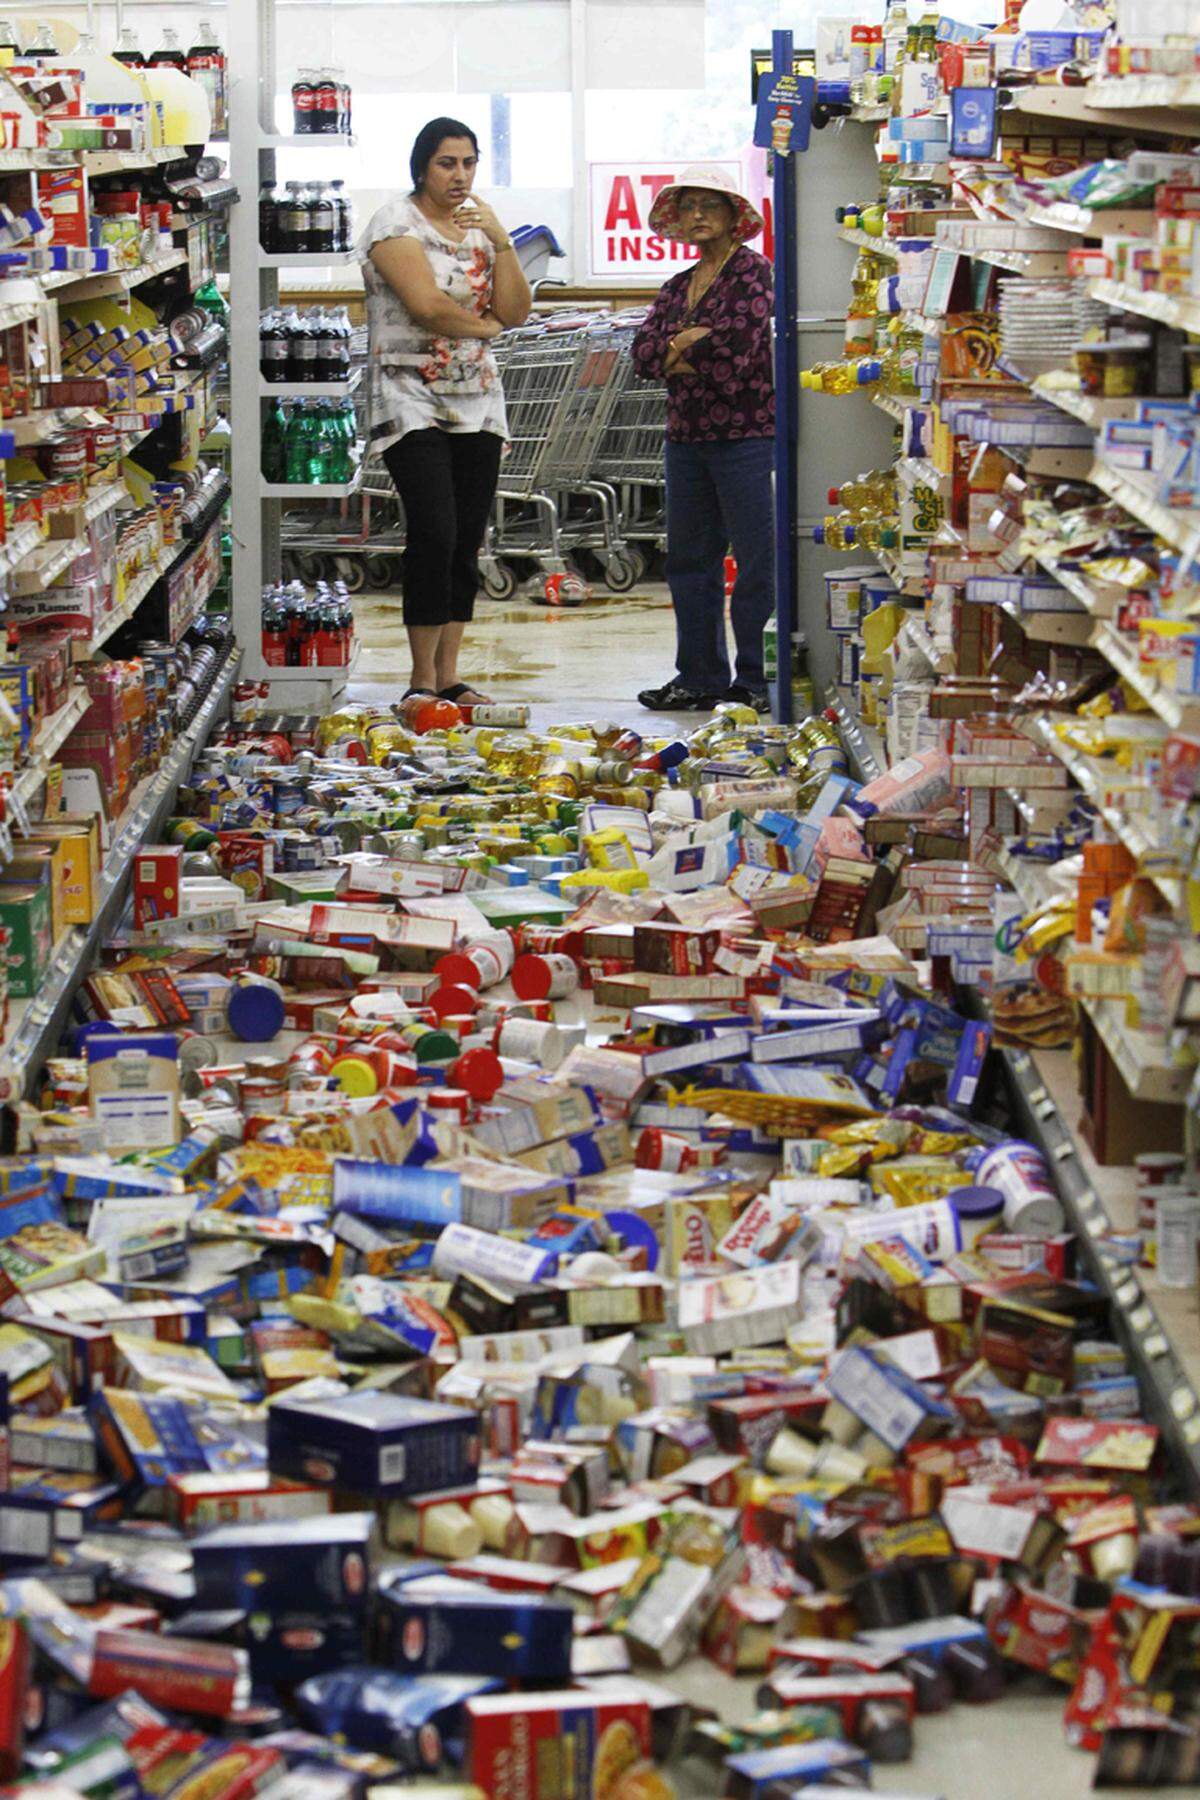 Im Bild: In einem Supermarkt in Virginia hat das beben die Ware aus den Regalen geschüttelt.